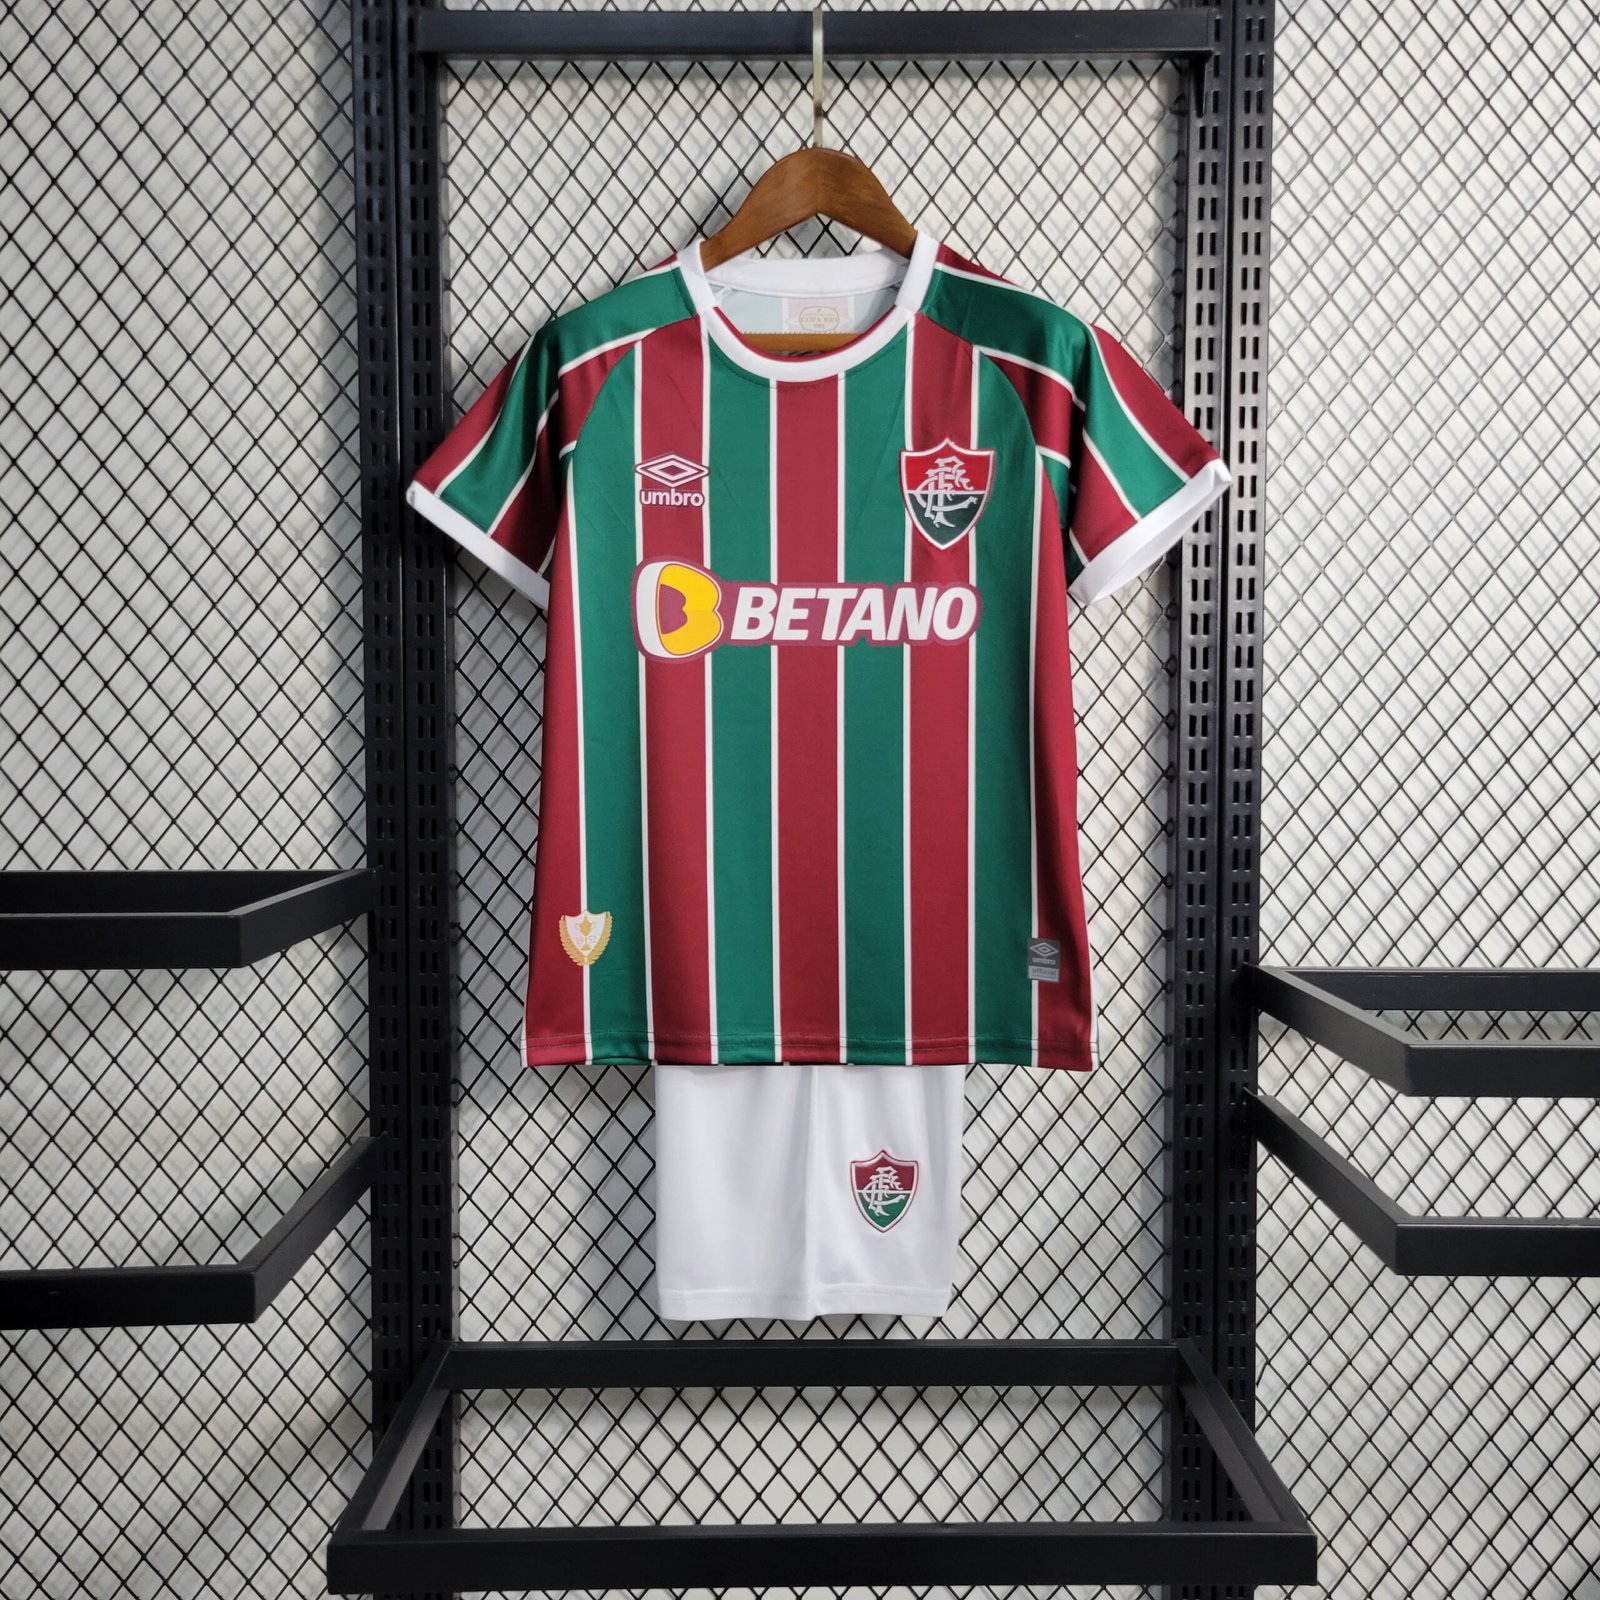 Camisa Fluminense Infantil - Compre Online